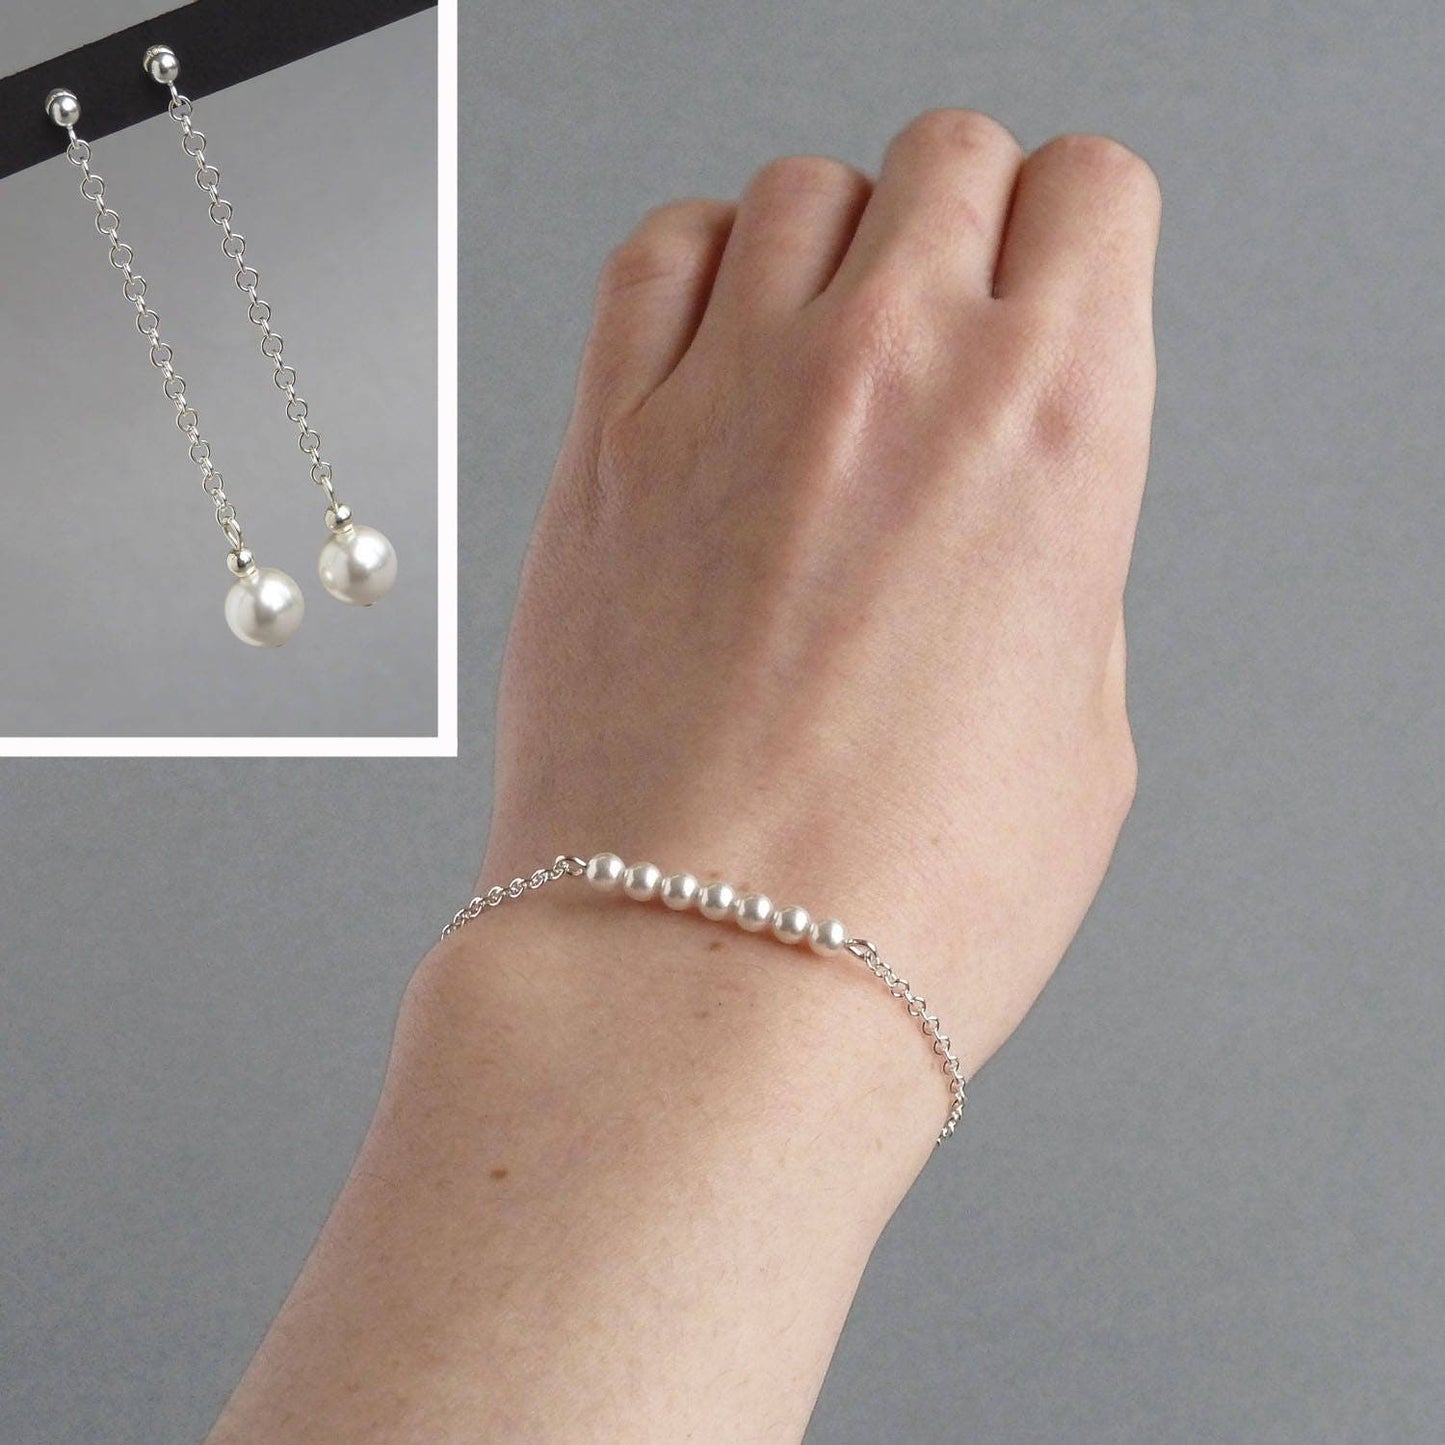 White Glass Pearl Drop Earrings - Delicate, Long, Chain Dangle Earrings